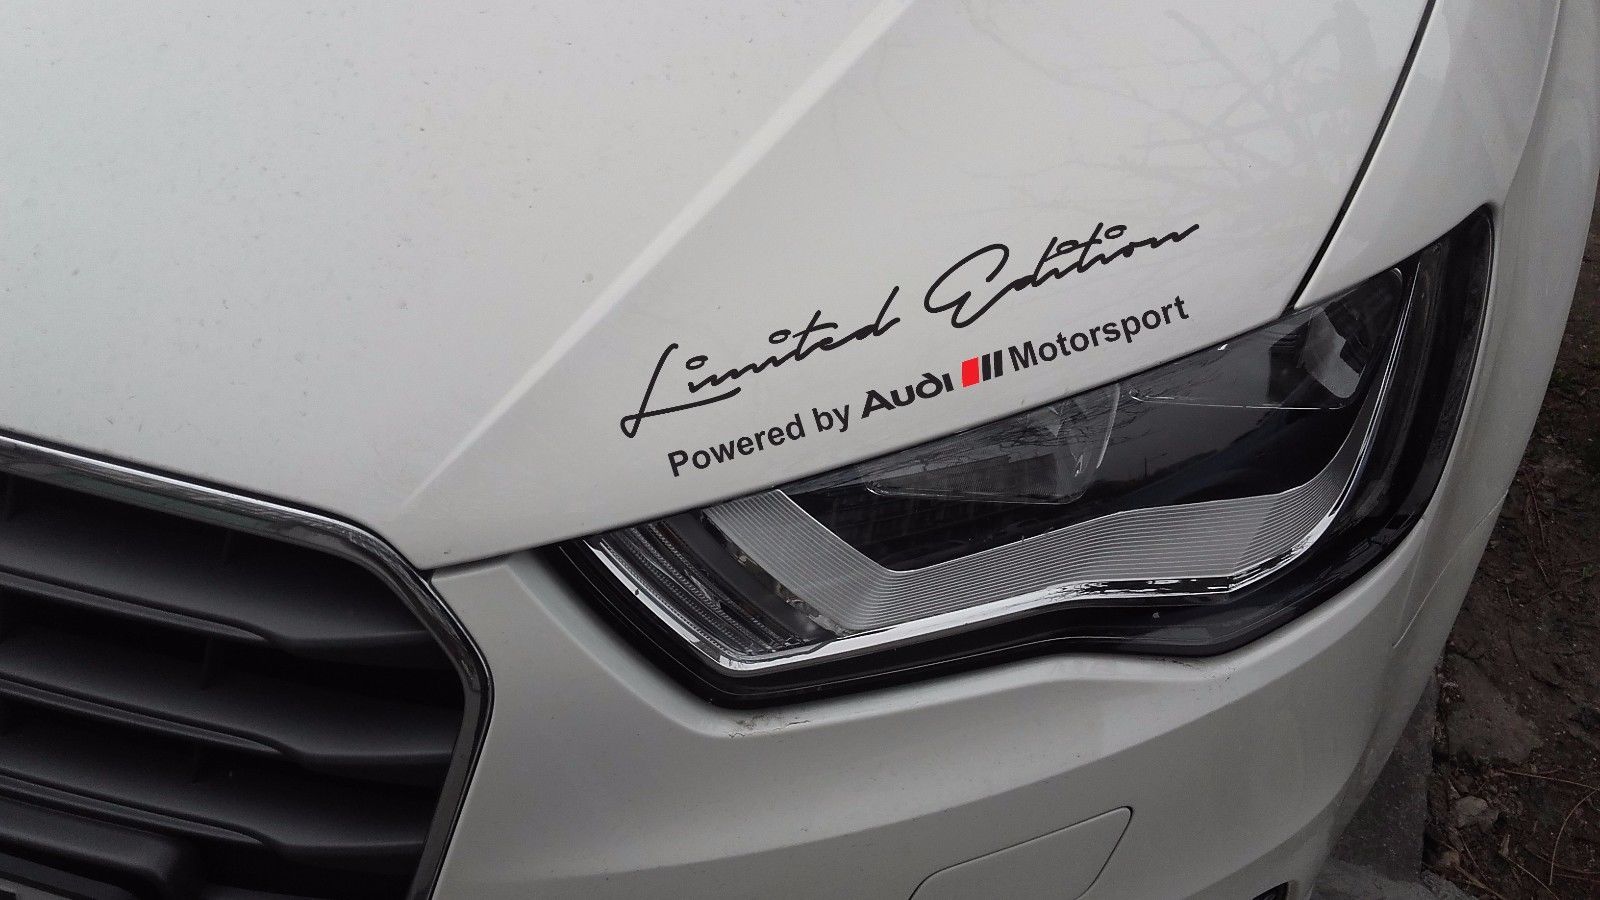 2 x Autoadesivo Decalcomania Audi Audi Motorsport Compatibile con i modelli AUDI